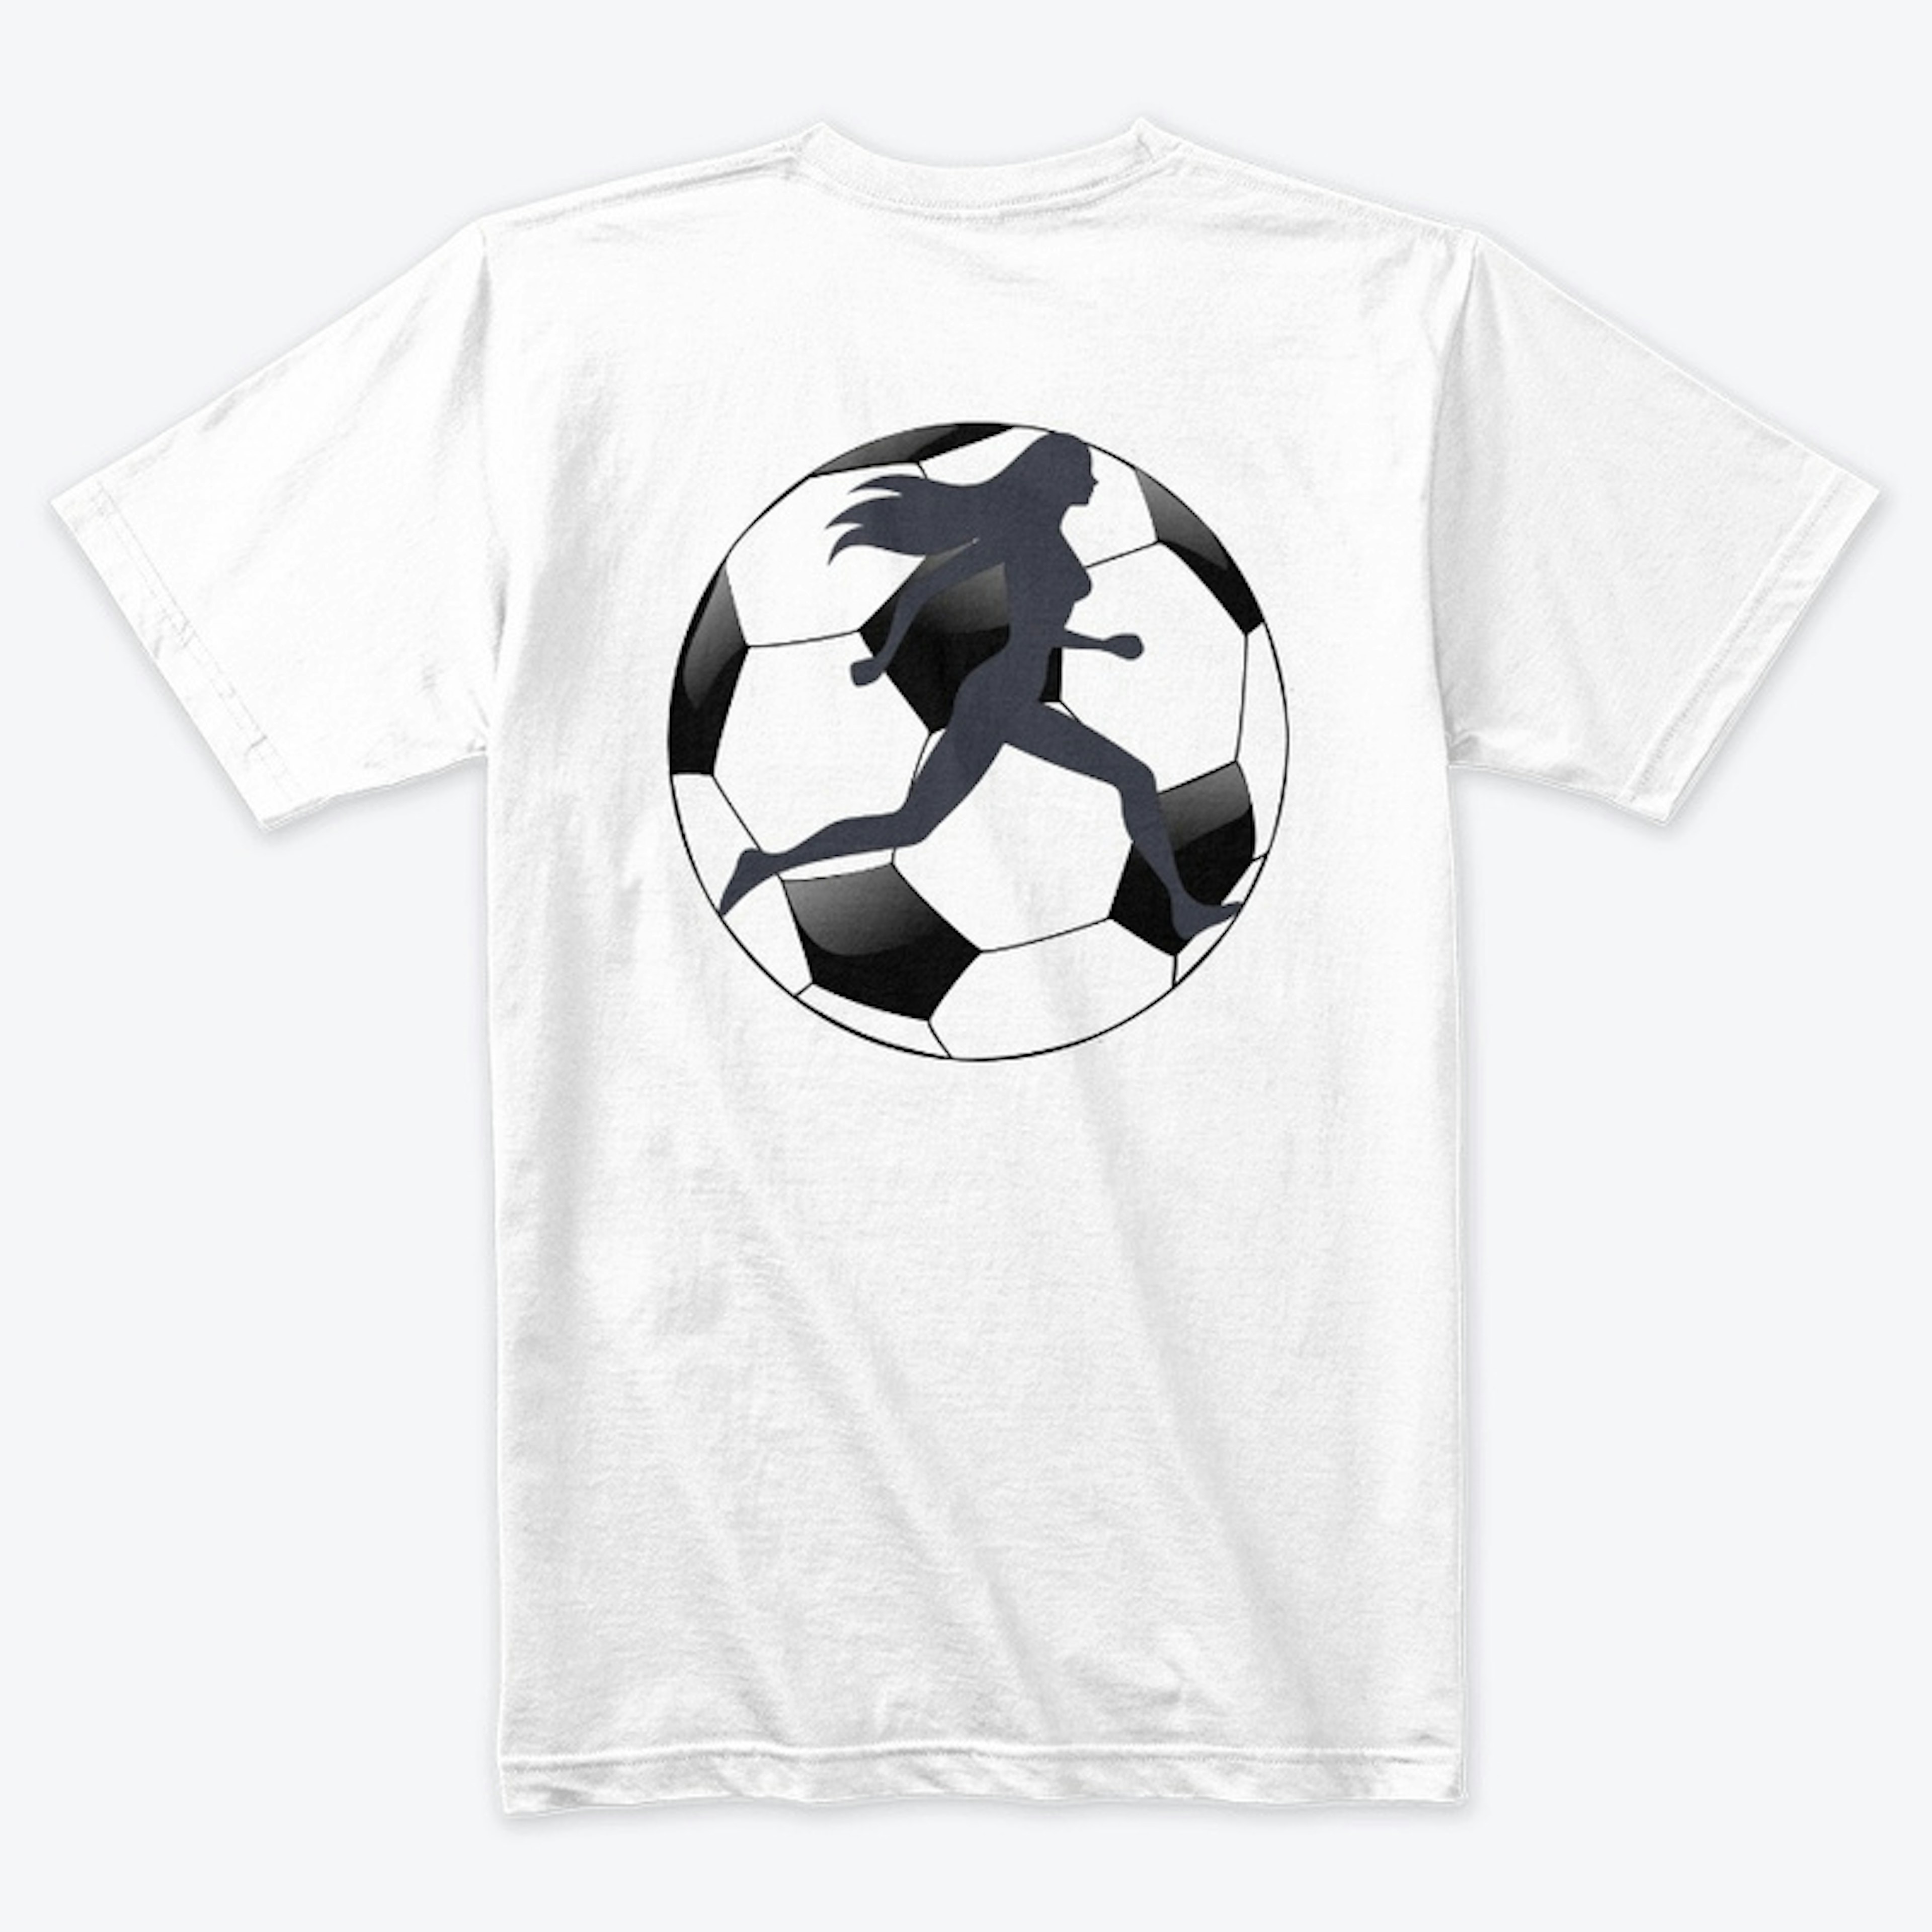 Soccer Design custom made